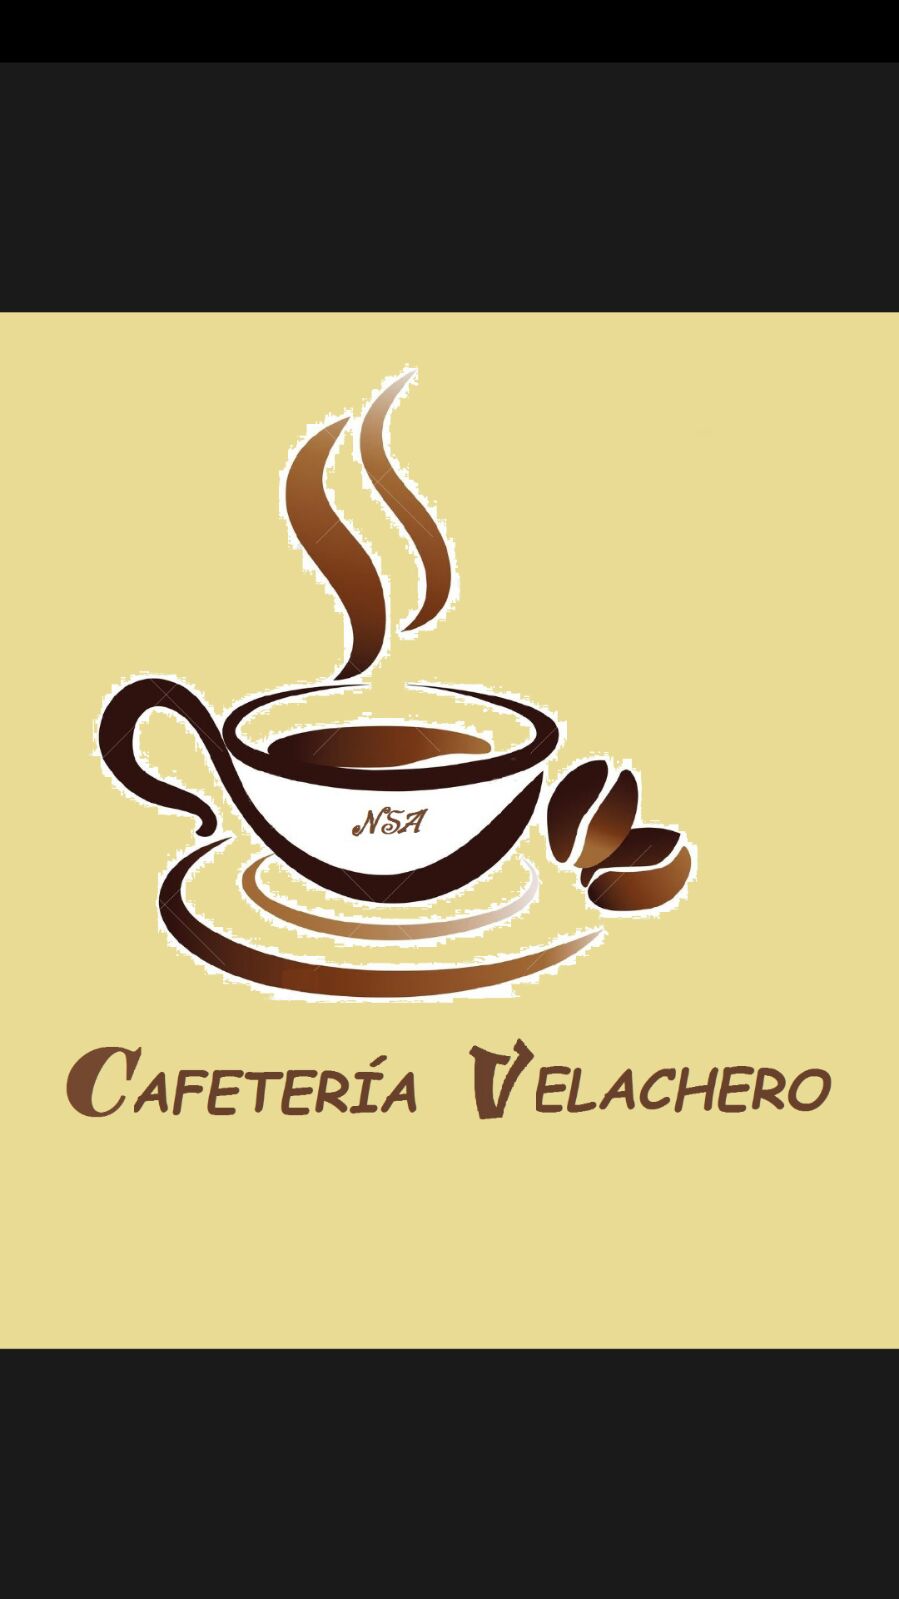 CAFETERIA VELACHERO